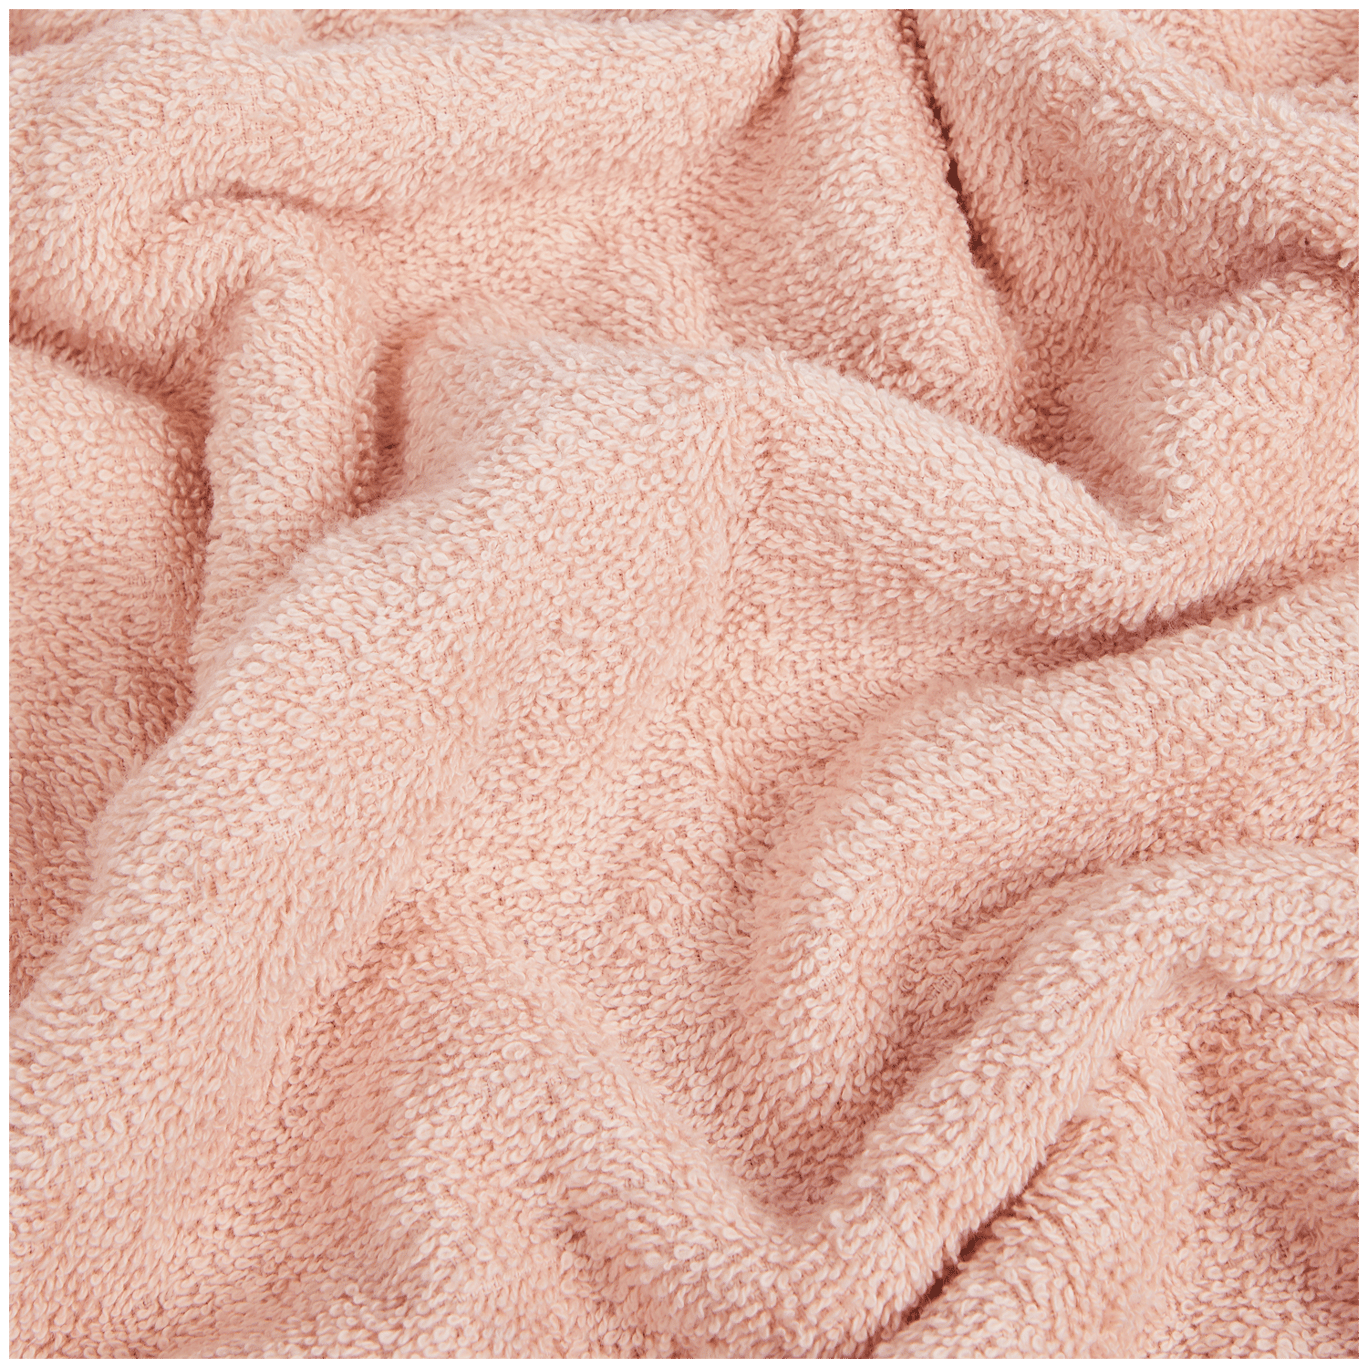 Asciugamano Capetown rosa cipria